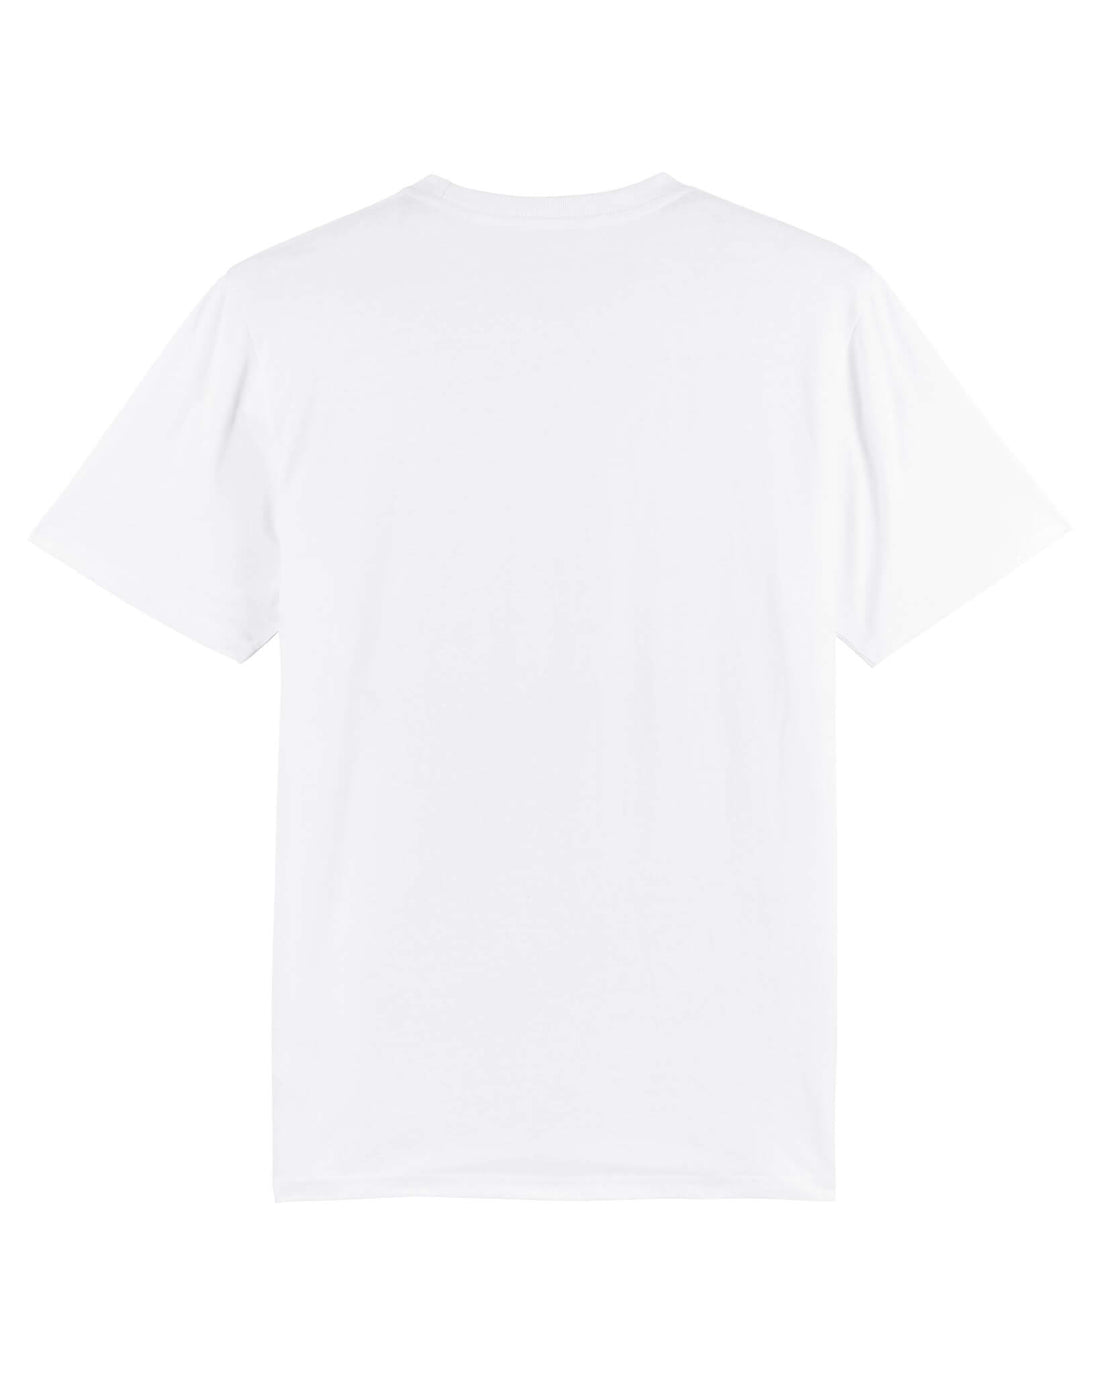 White Skater T-Shirt, Skate Ramp Back Print